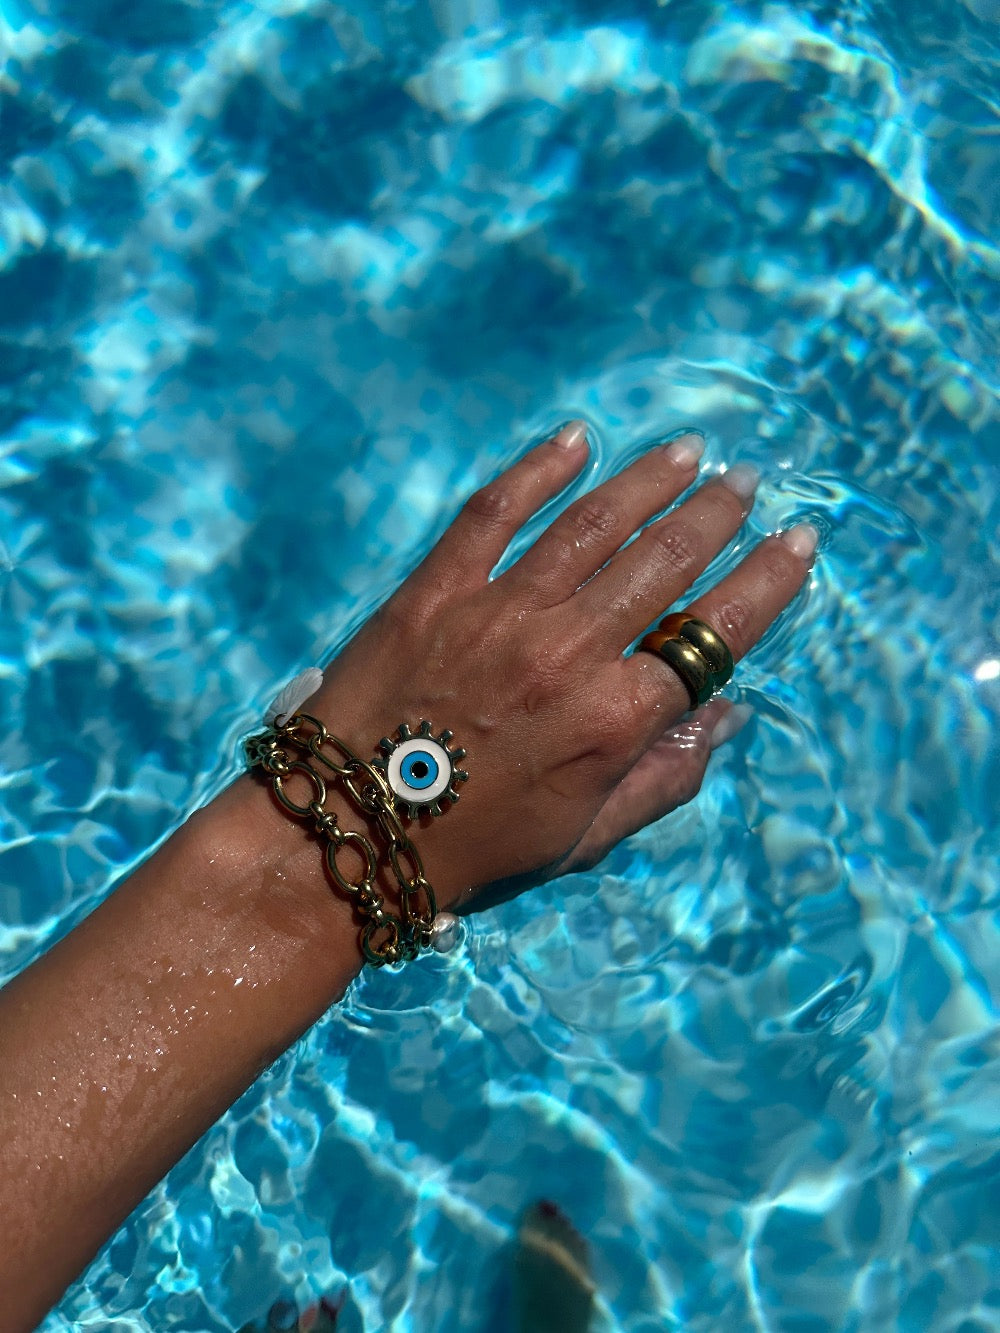 My Summer fan - Waterproof charm bracelet